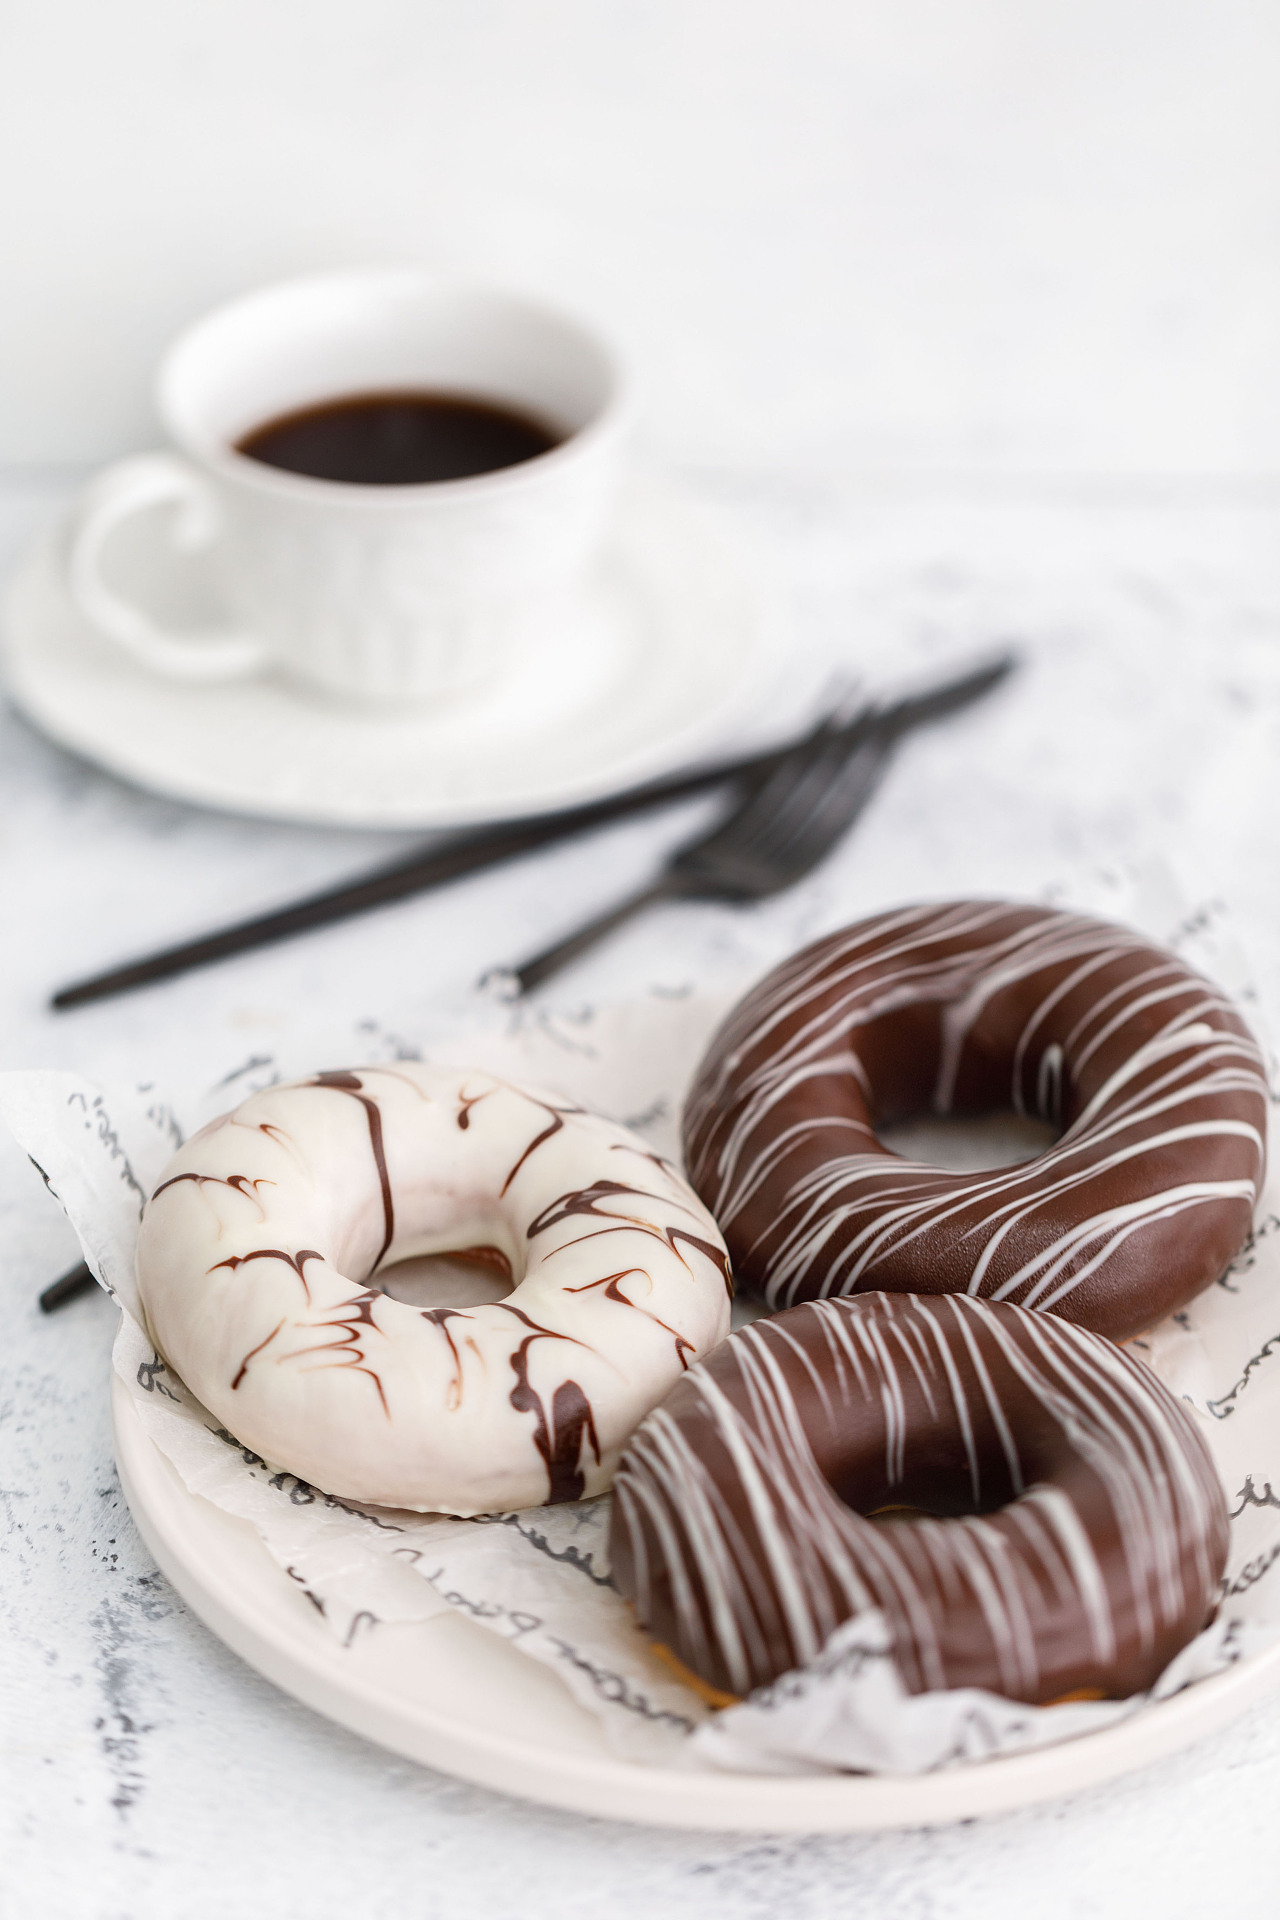 巧克力甜甜圈,巧克力甜甜圈的家常做法 - 美食杰巧克力甜甜圈做法大全